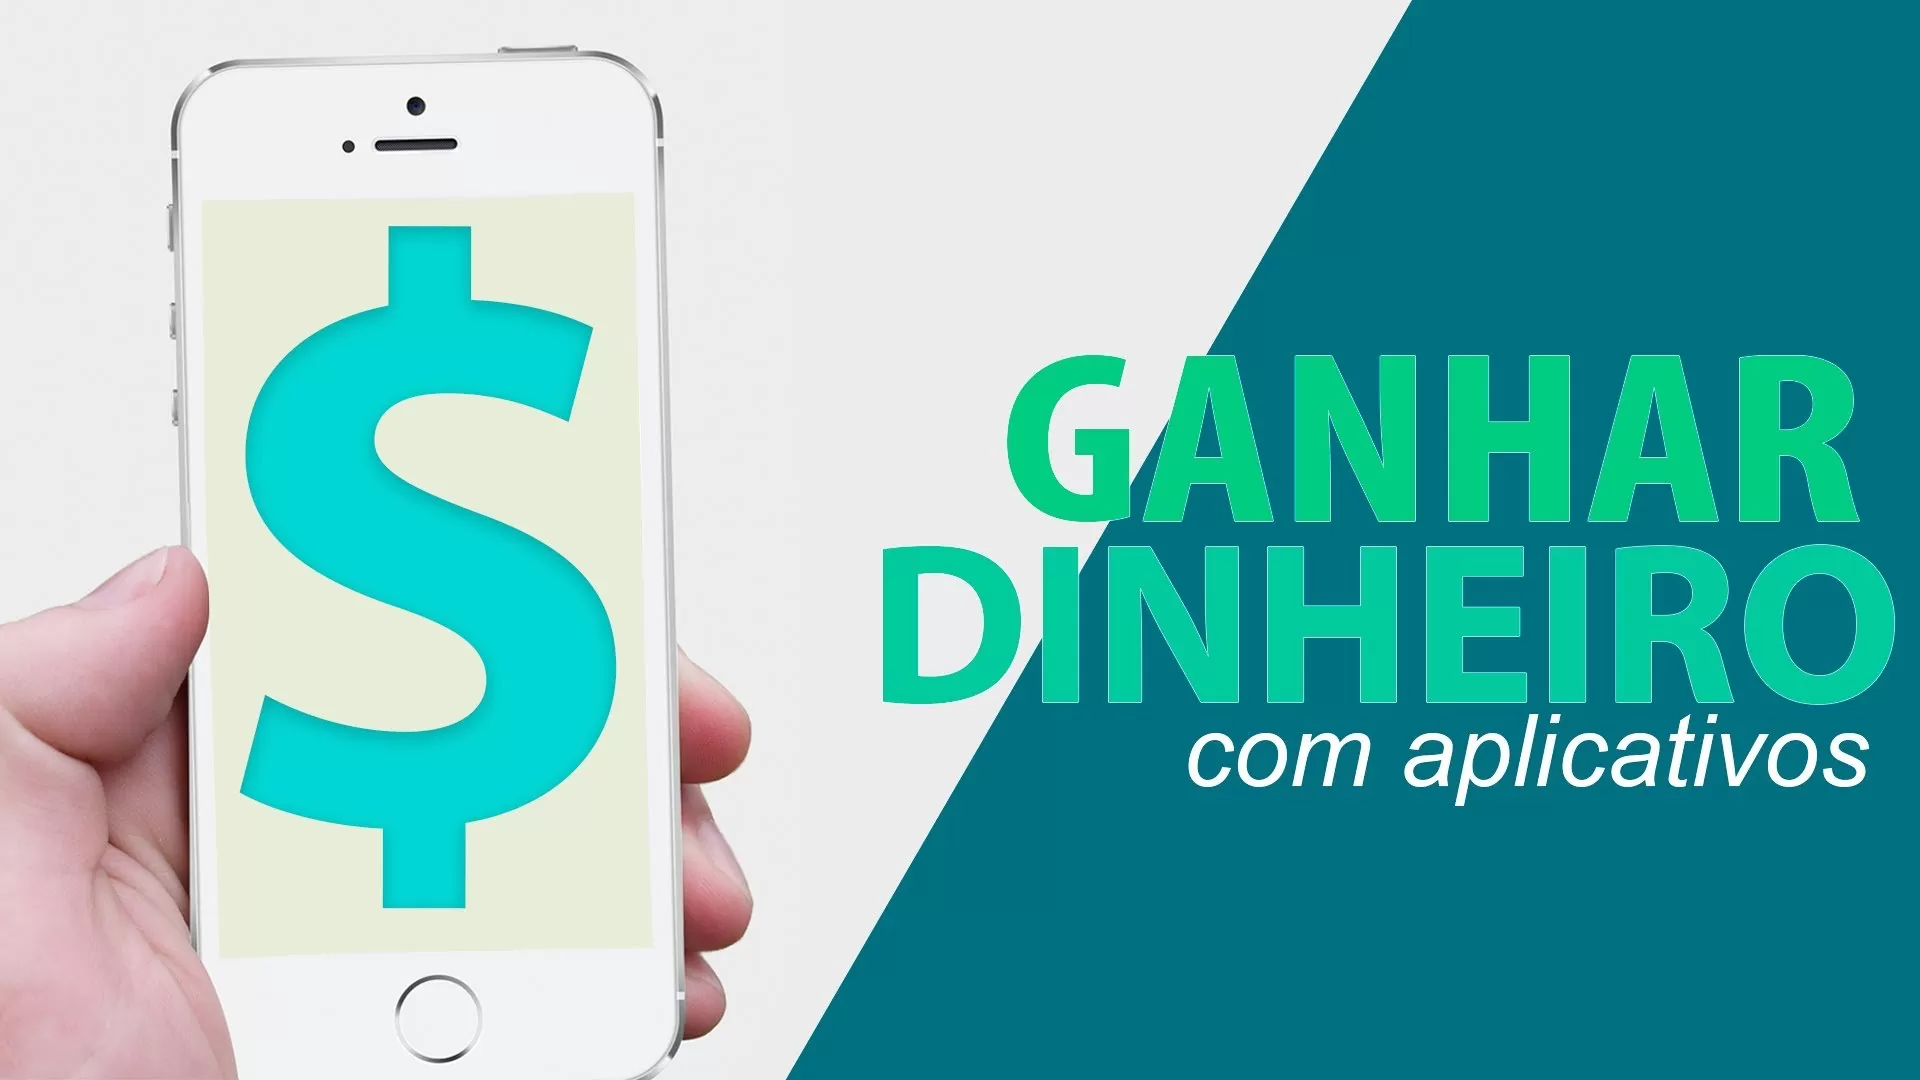 Veja como ganhar R$ 120 de “RENDA EXTRA” usando apenas aplicativos pelo celular